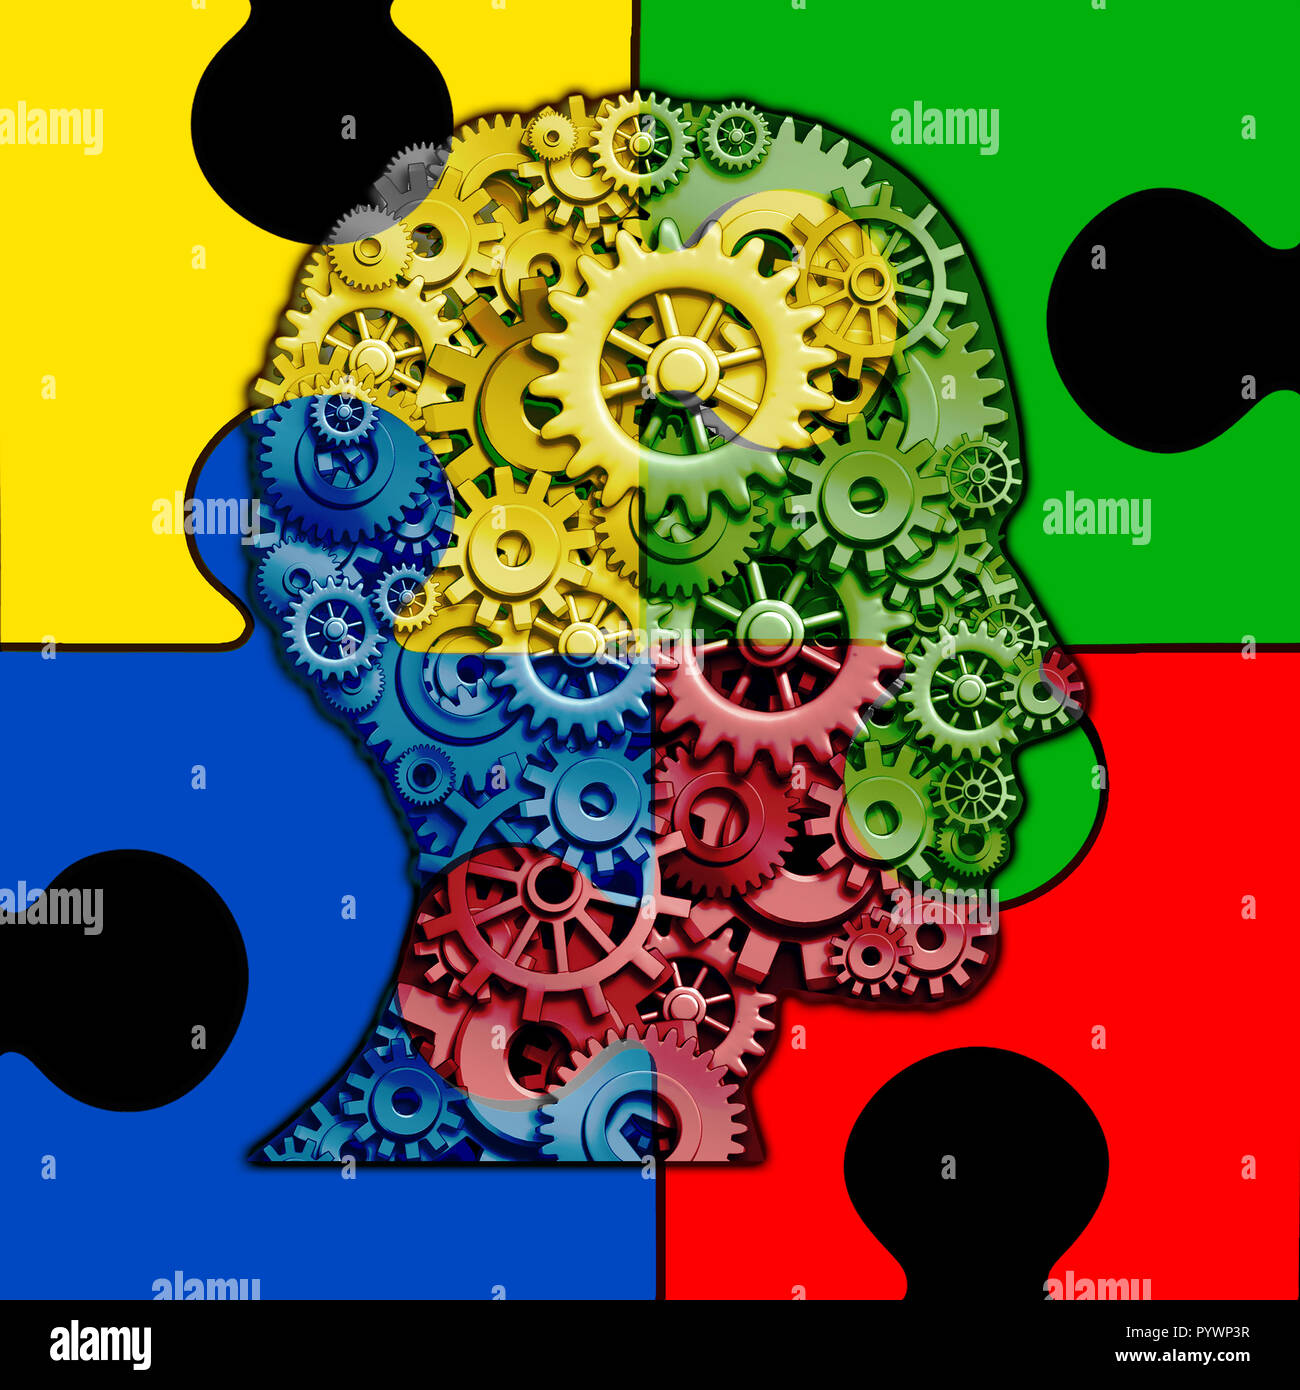 La fonction cérébrale autisme et troubles du développement autisme concept comme un symbole d'une communication et comportement social la psychologie comme une tête humaine. Banque D'Images